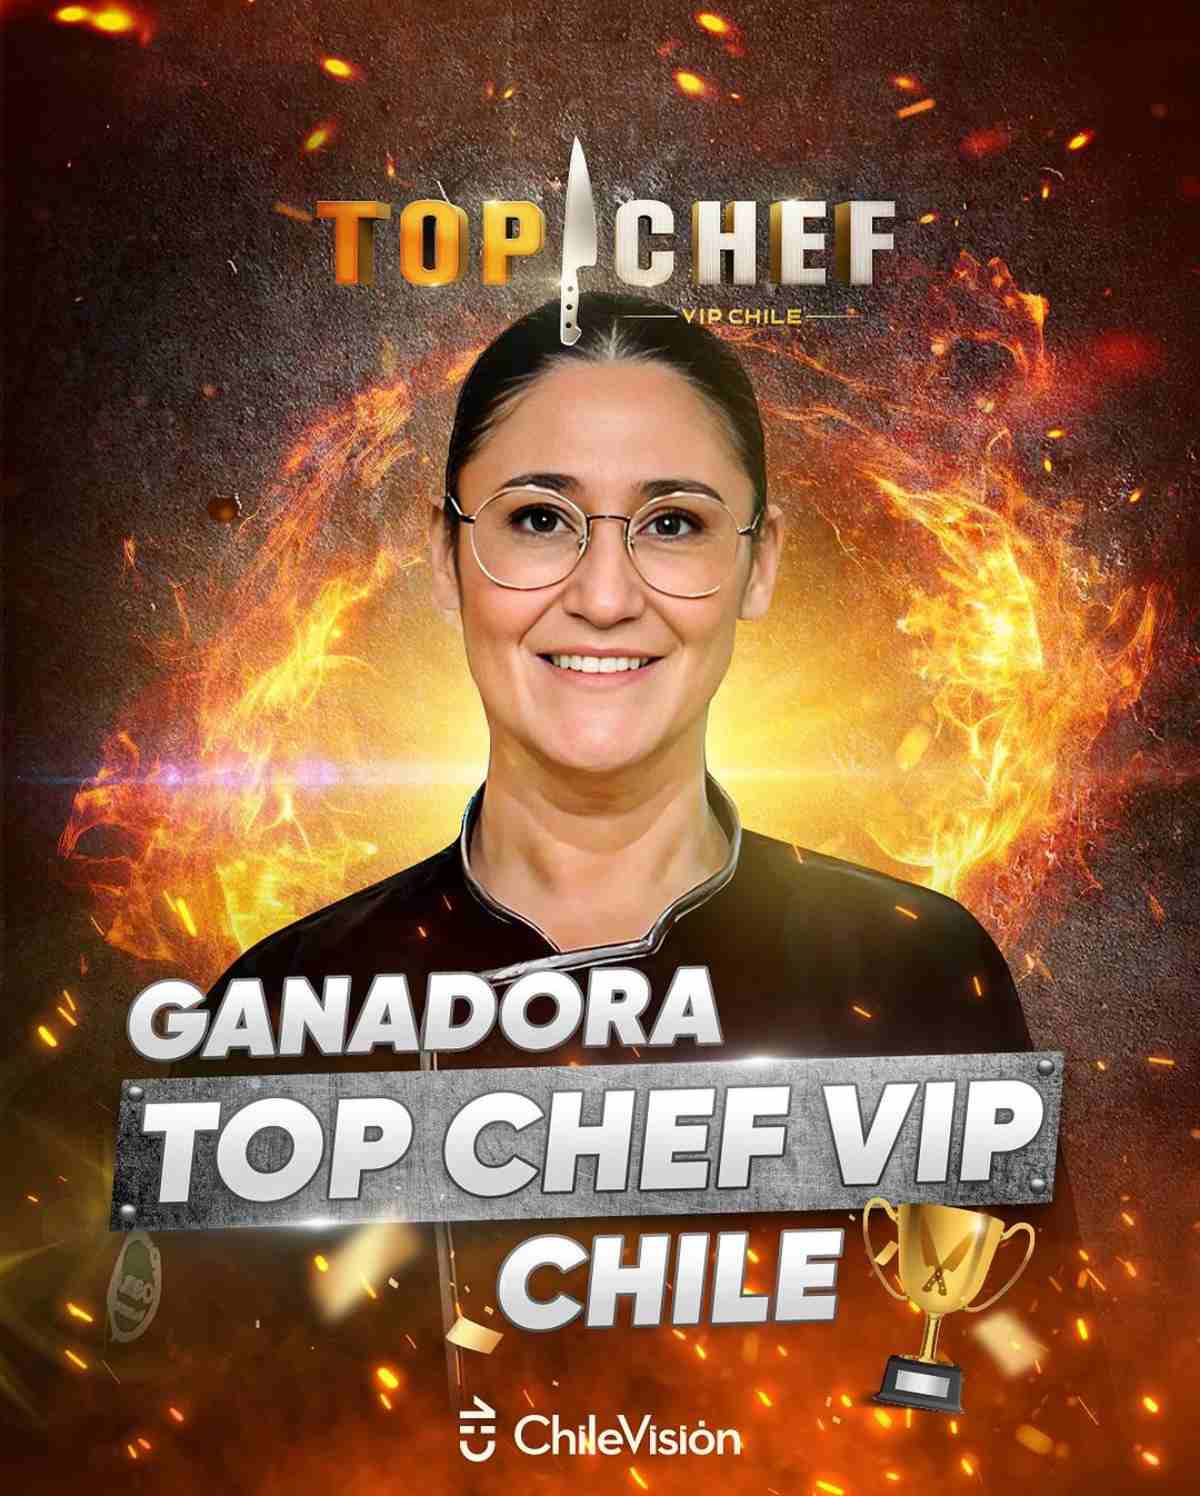 TOP CHEF VIP Ganador